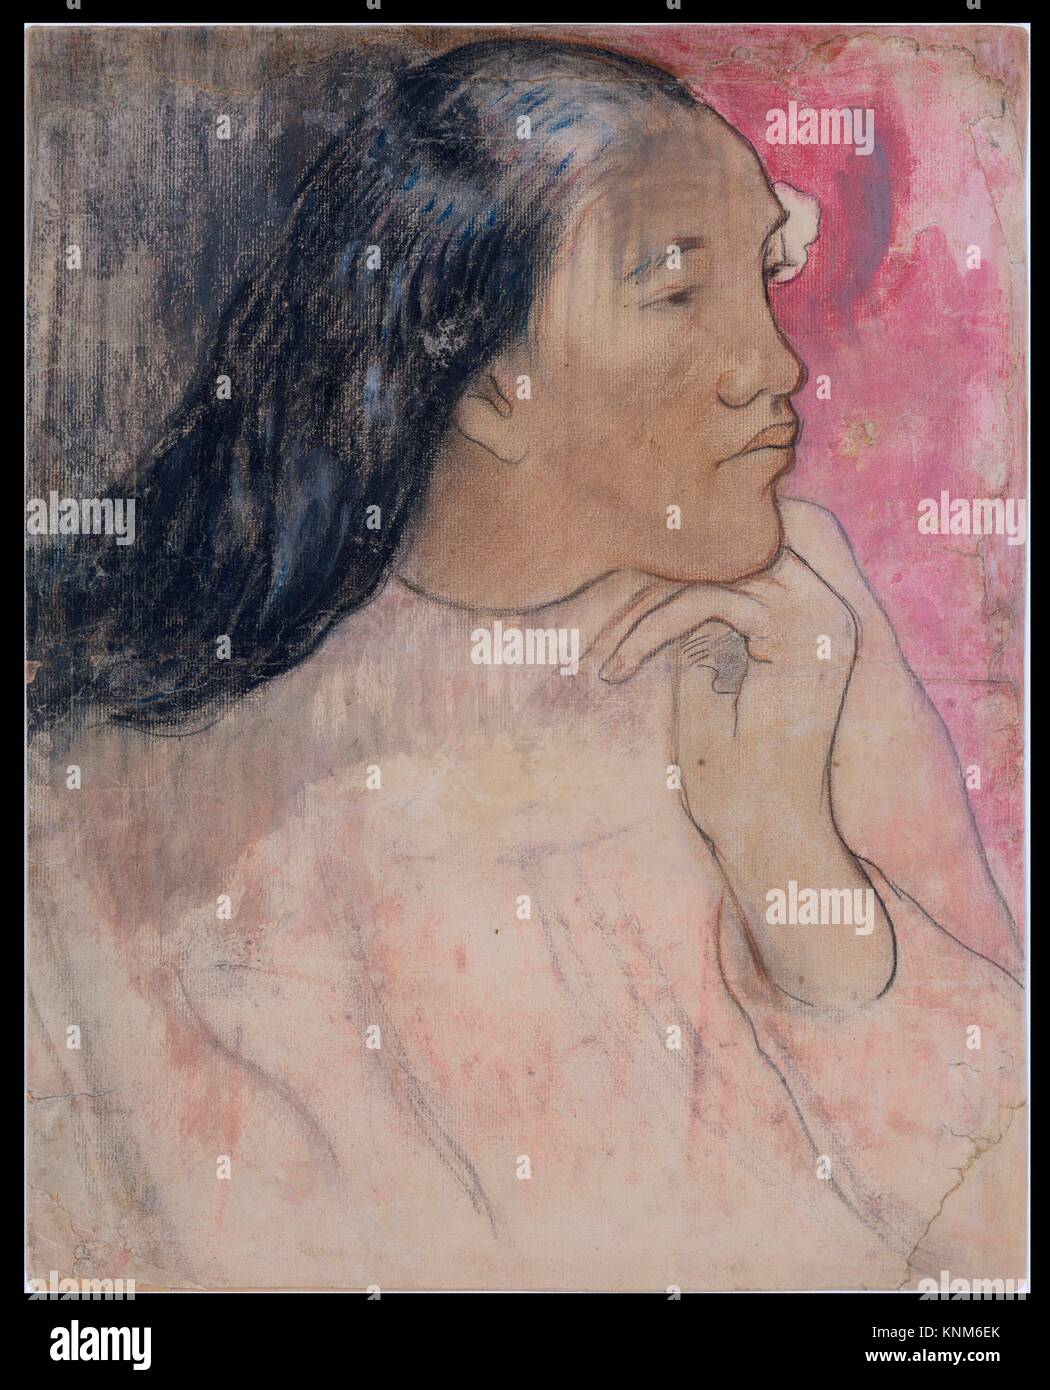 Tahitianischen Frau mit einer Blume im Haar. Artist: Paul Gauguin (Französisch, Paris 1848-1903 Atuona, Hiva Oa, Marquesas Inseln); Datum: 1891-92; Medium: Stockfoto